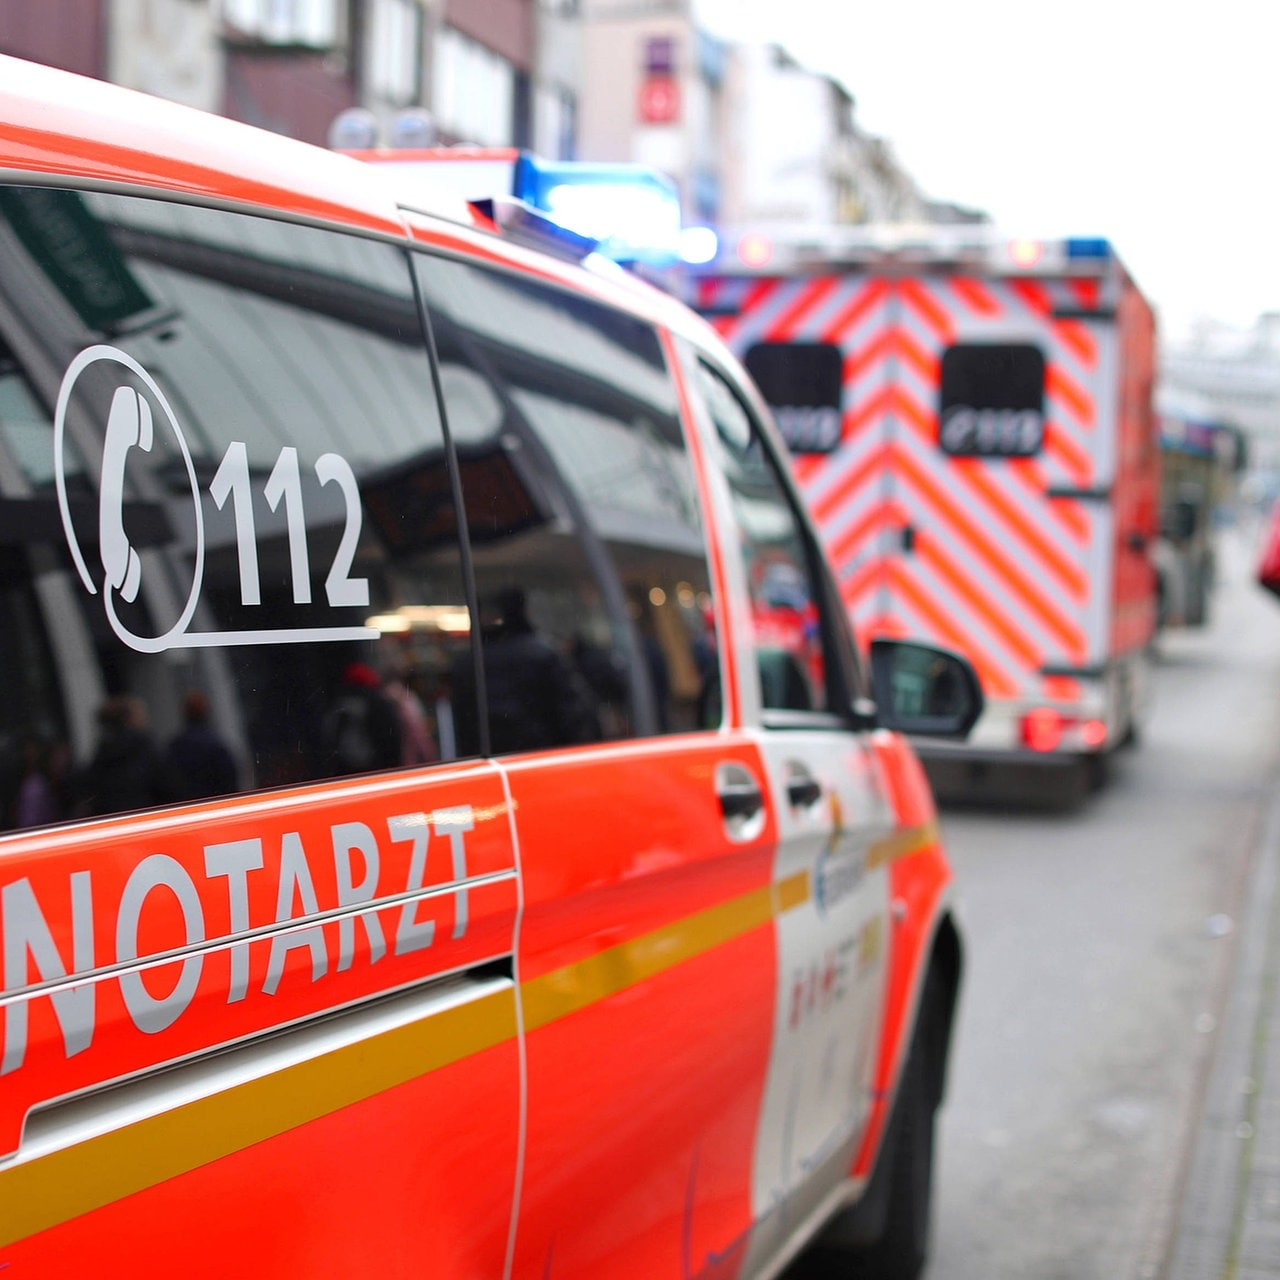 Notfallhammer Nothammer Auto Unfall in Sachsen-Anhalt